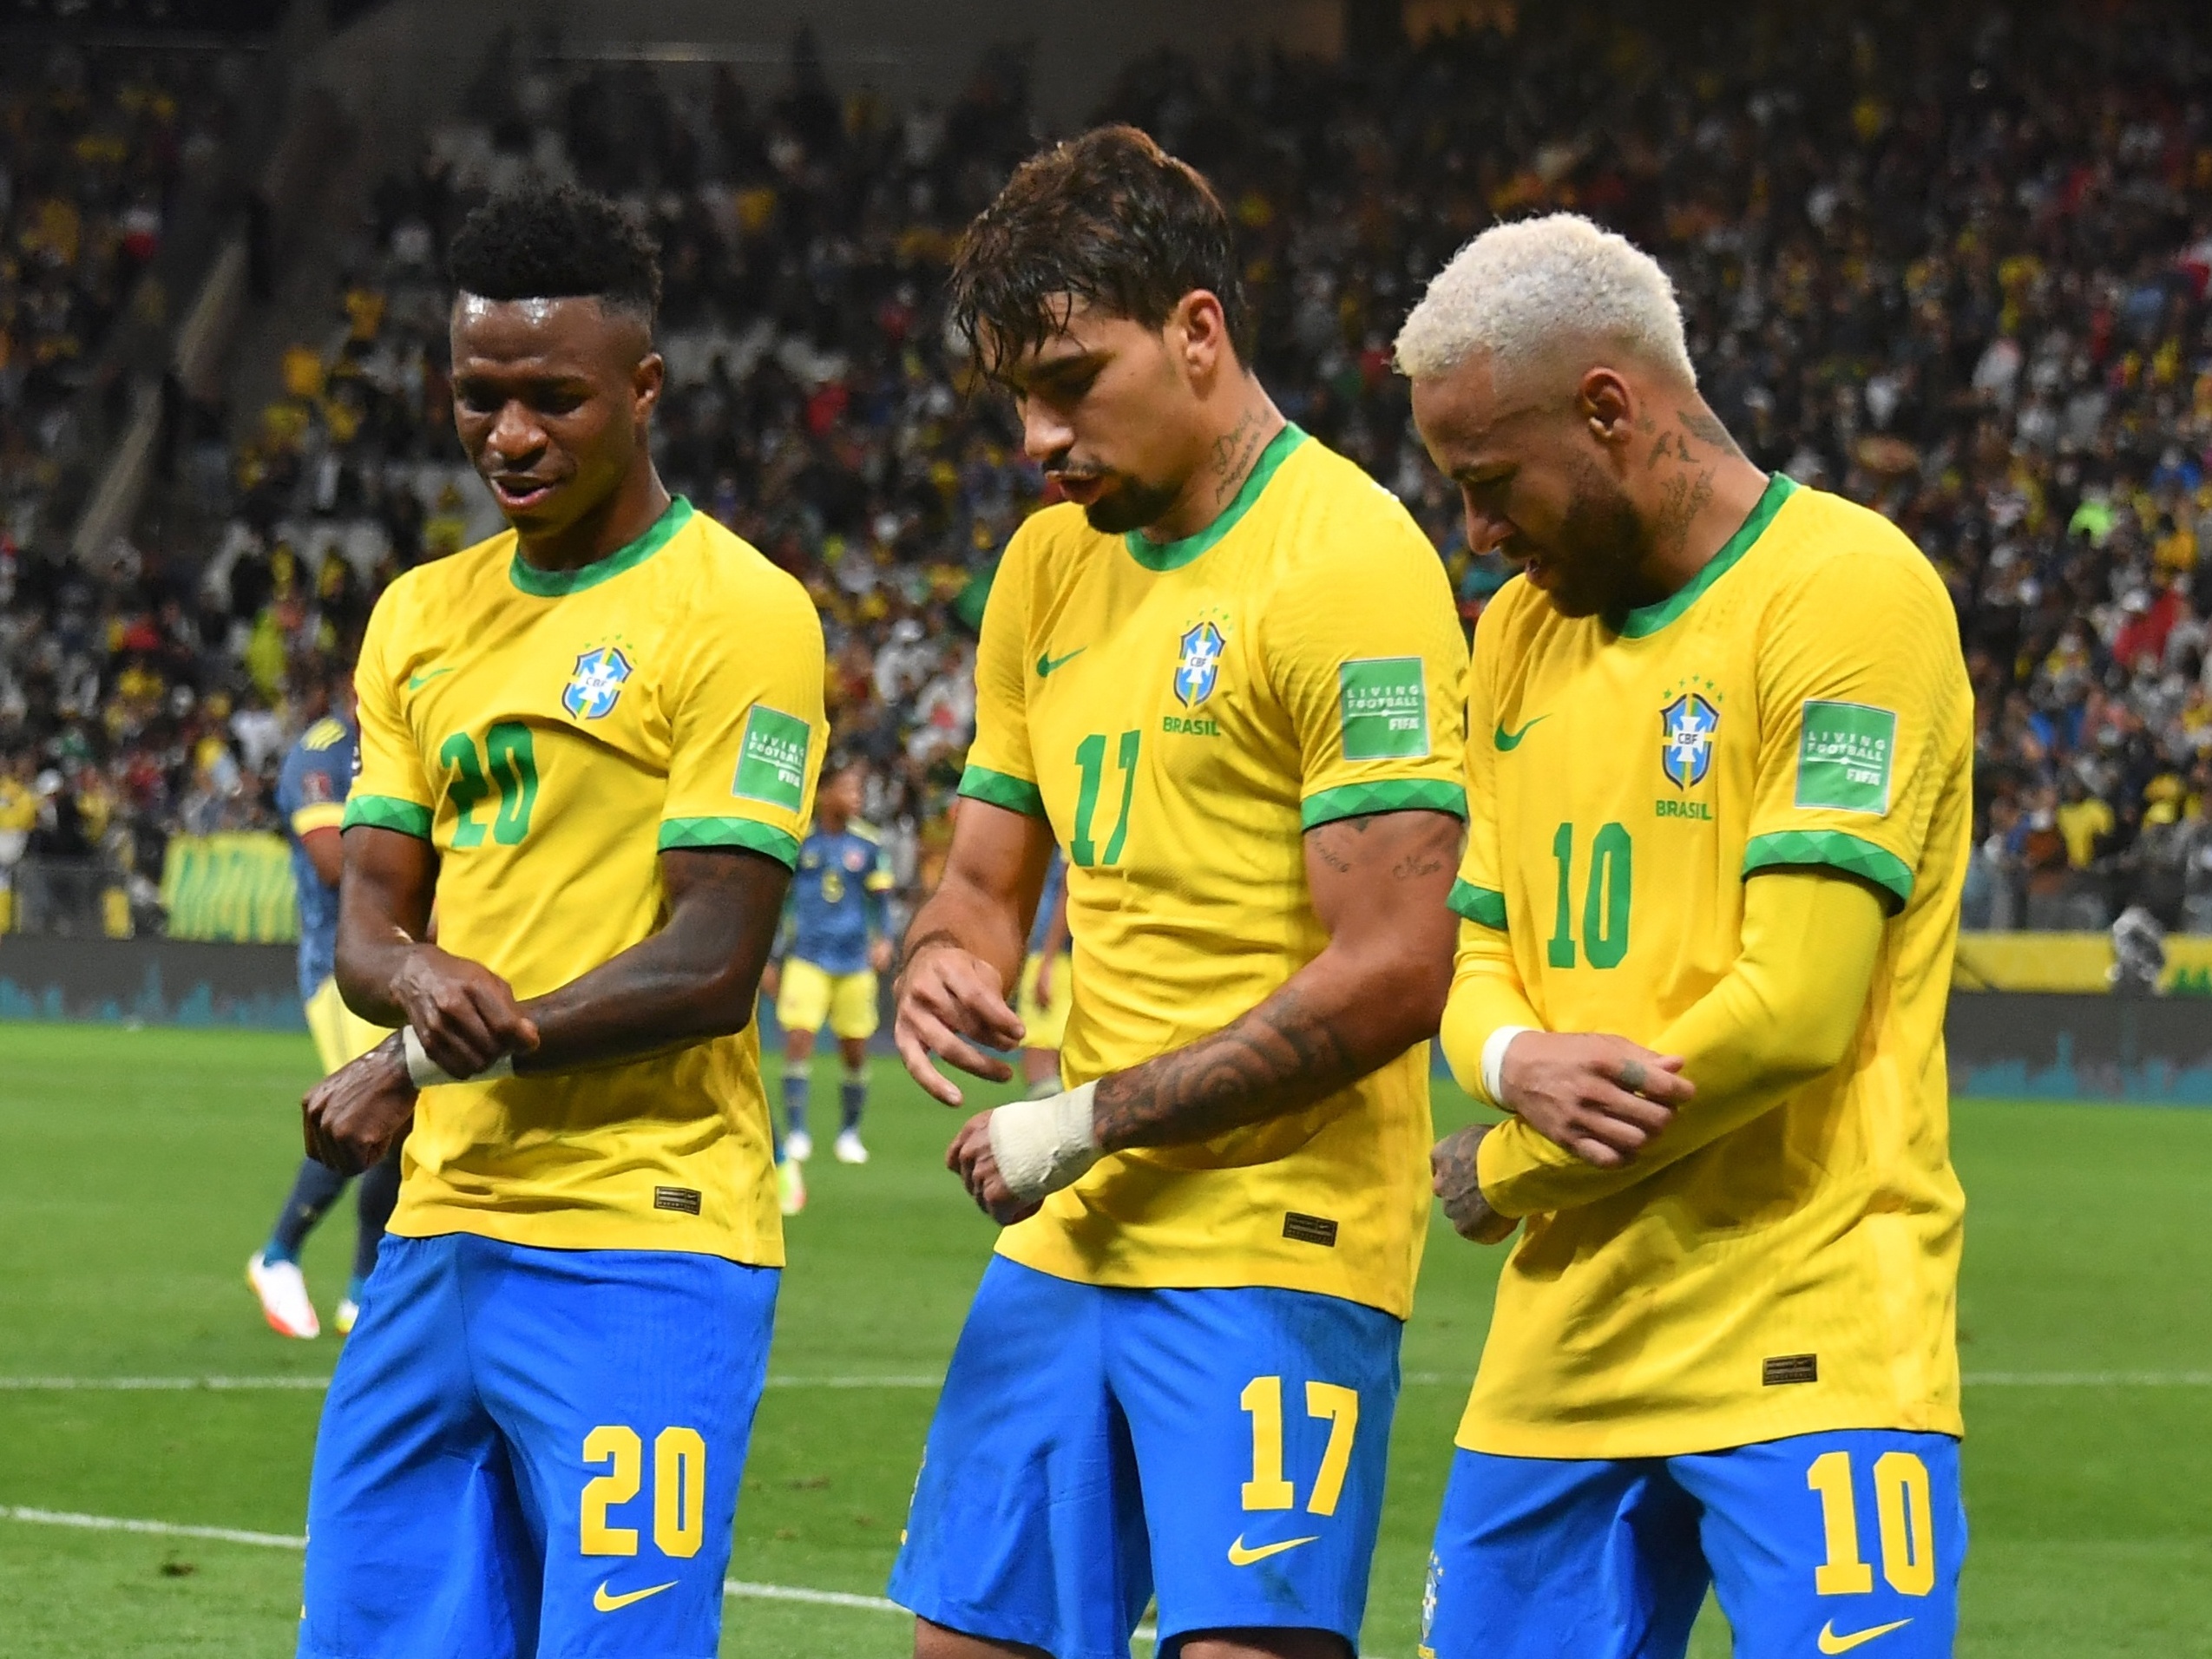 https://conteudo.imguol.com.br/c/esporte/df/2021/11/11/vinicius-junior-lucas-paqueta-e-neymar-comemoram-gol-do-brasil-contra-a-colombia-pelas-eliminatorias-1636683347476_v2_4x3.jpg